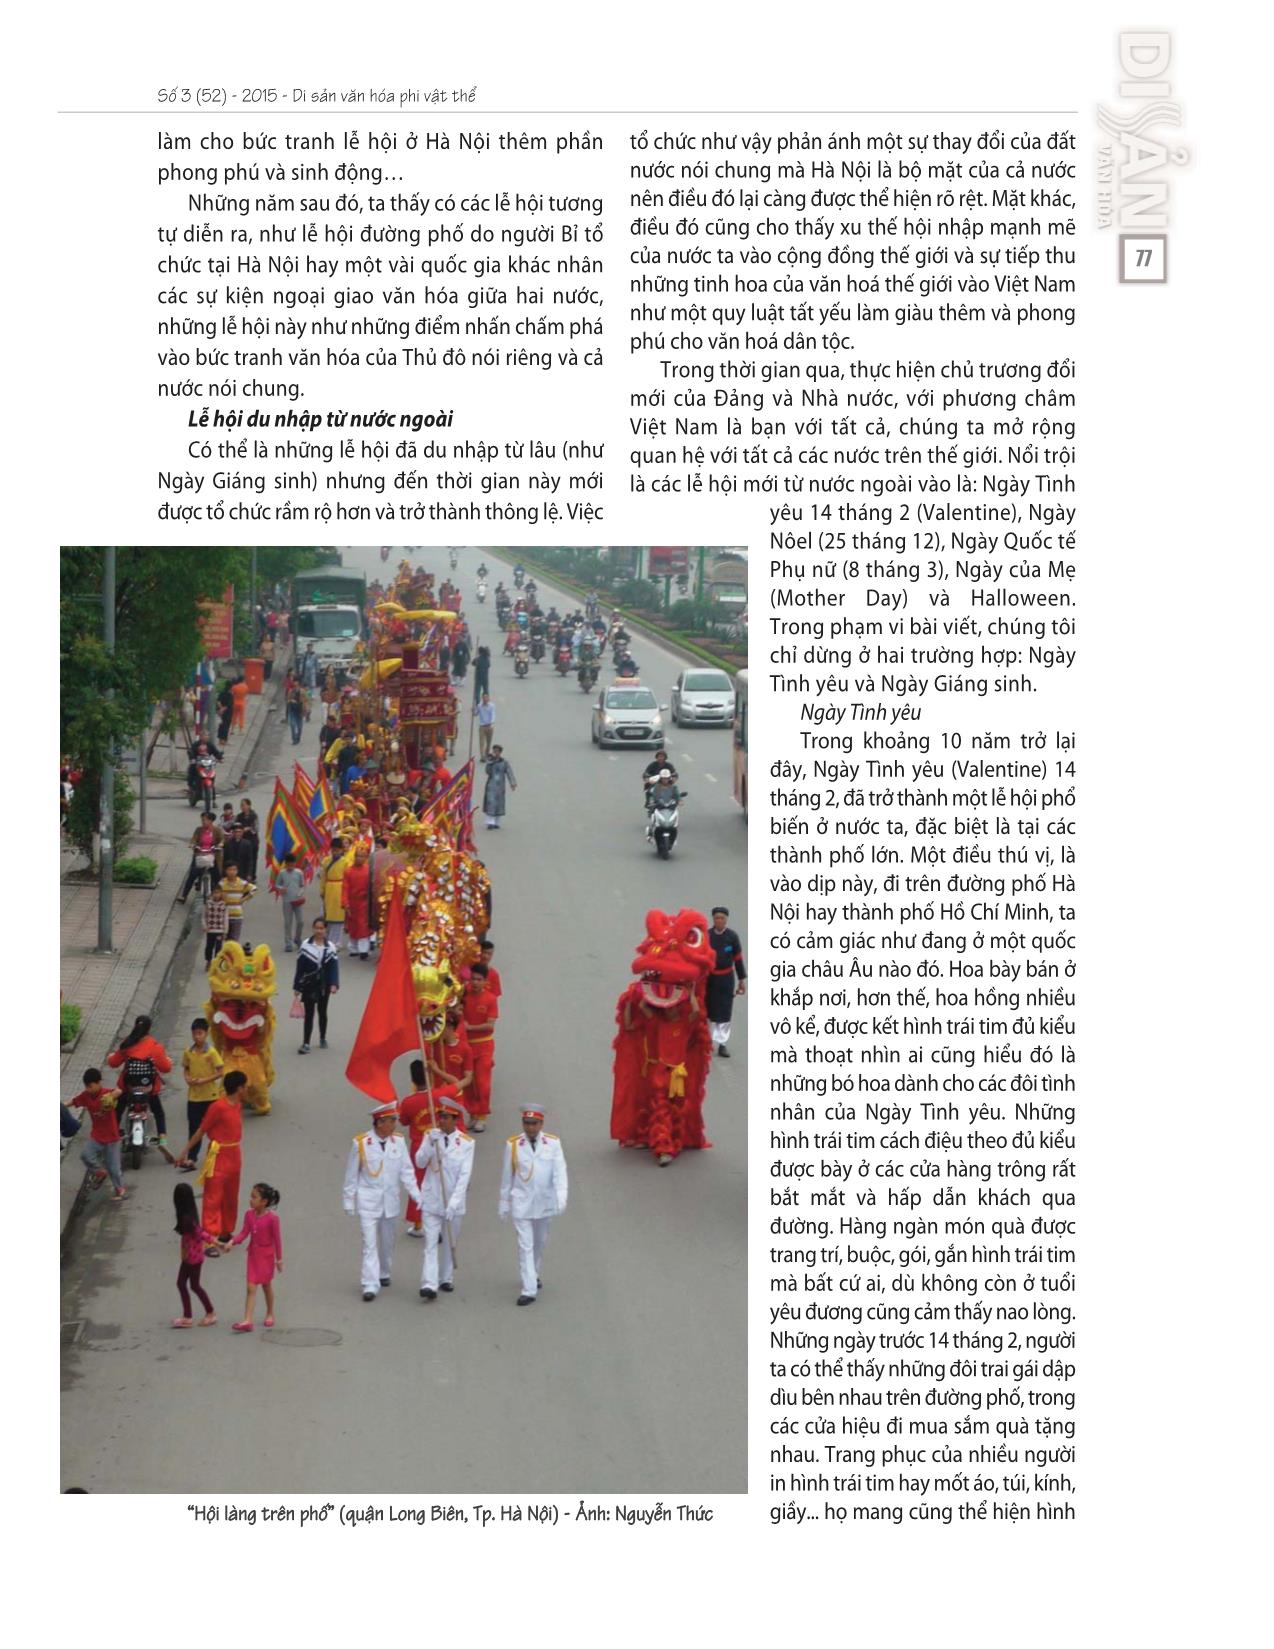 Biến đổi lễ hội ở đô thị - Quan sát từ Hà Nội trang 5